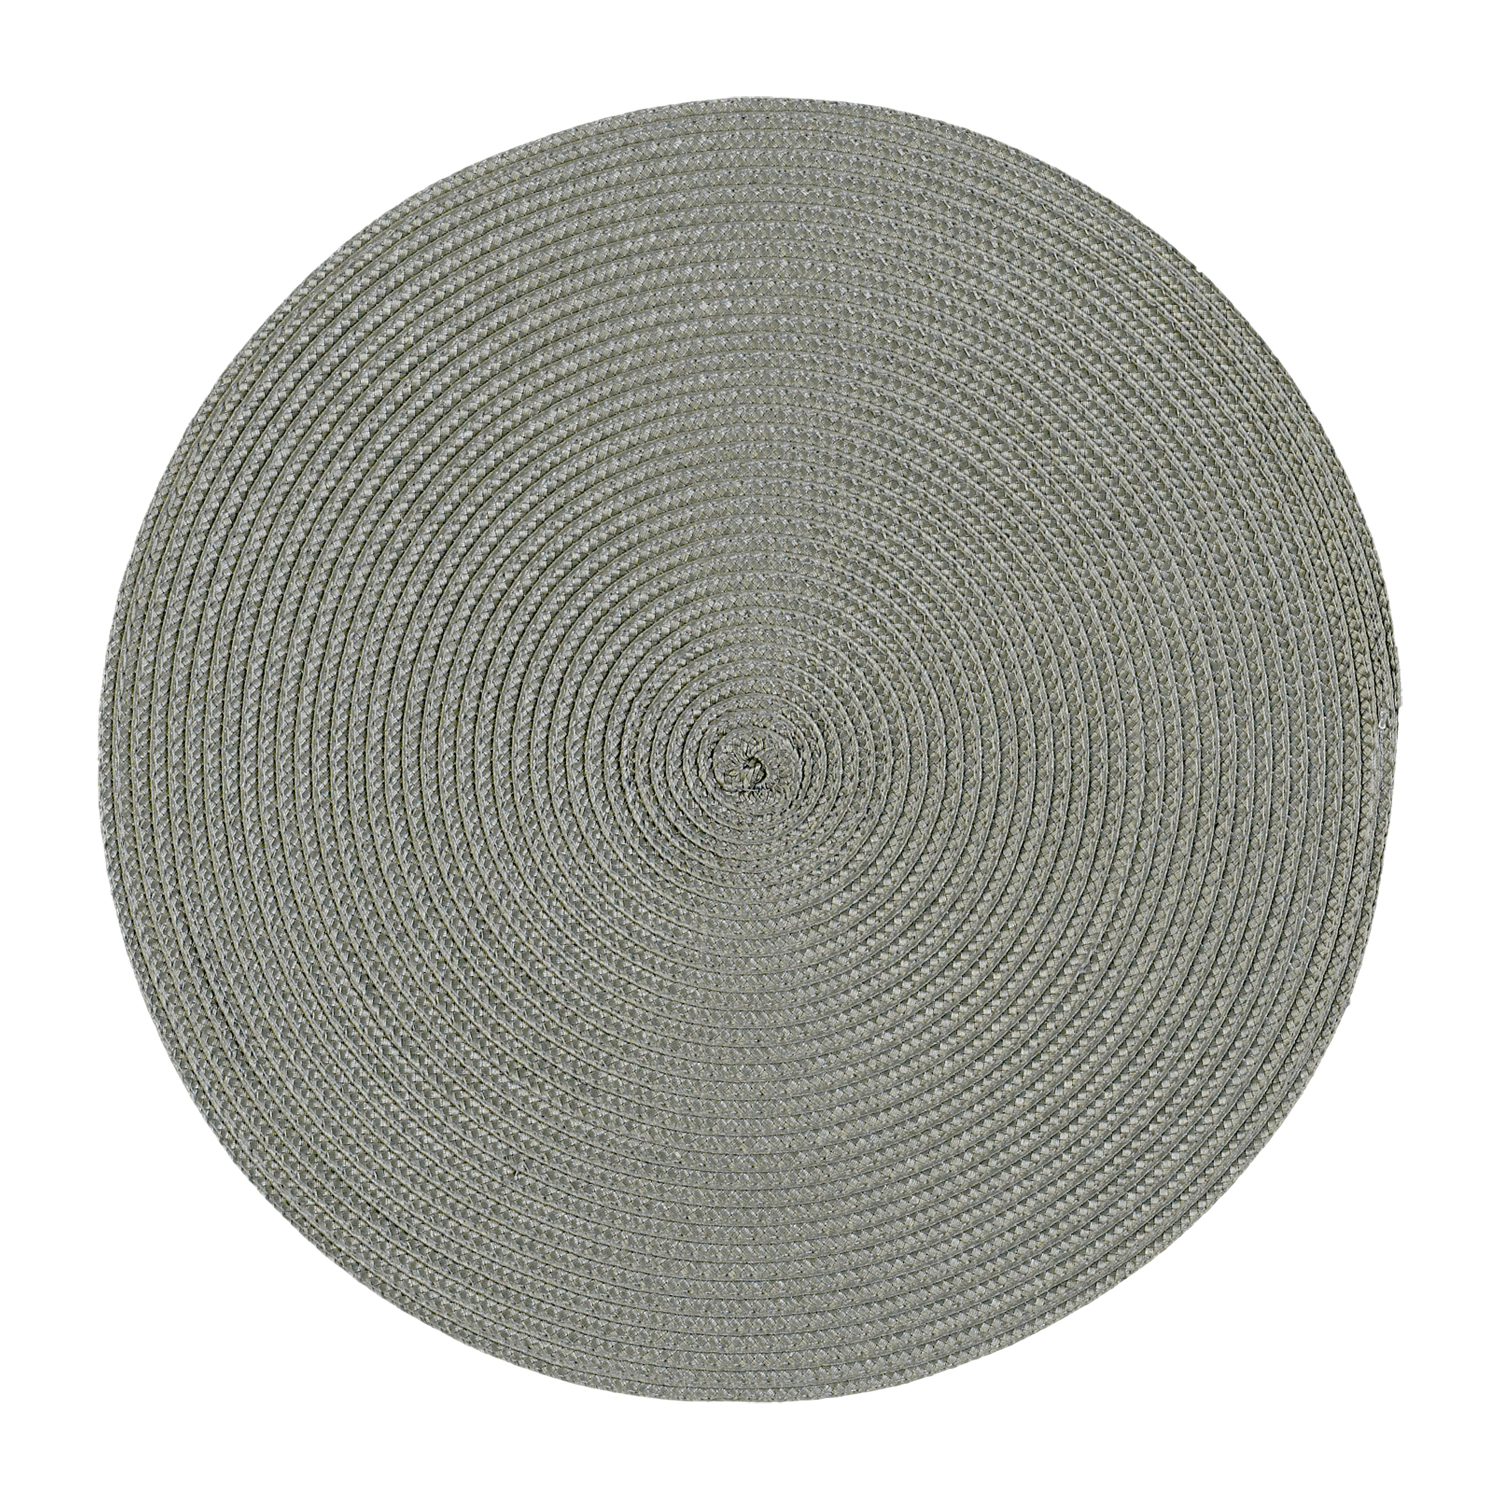 Tischset Polypro rund - Farbe grau